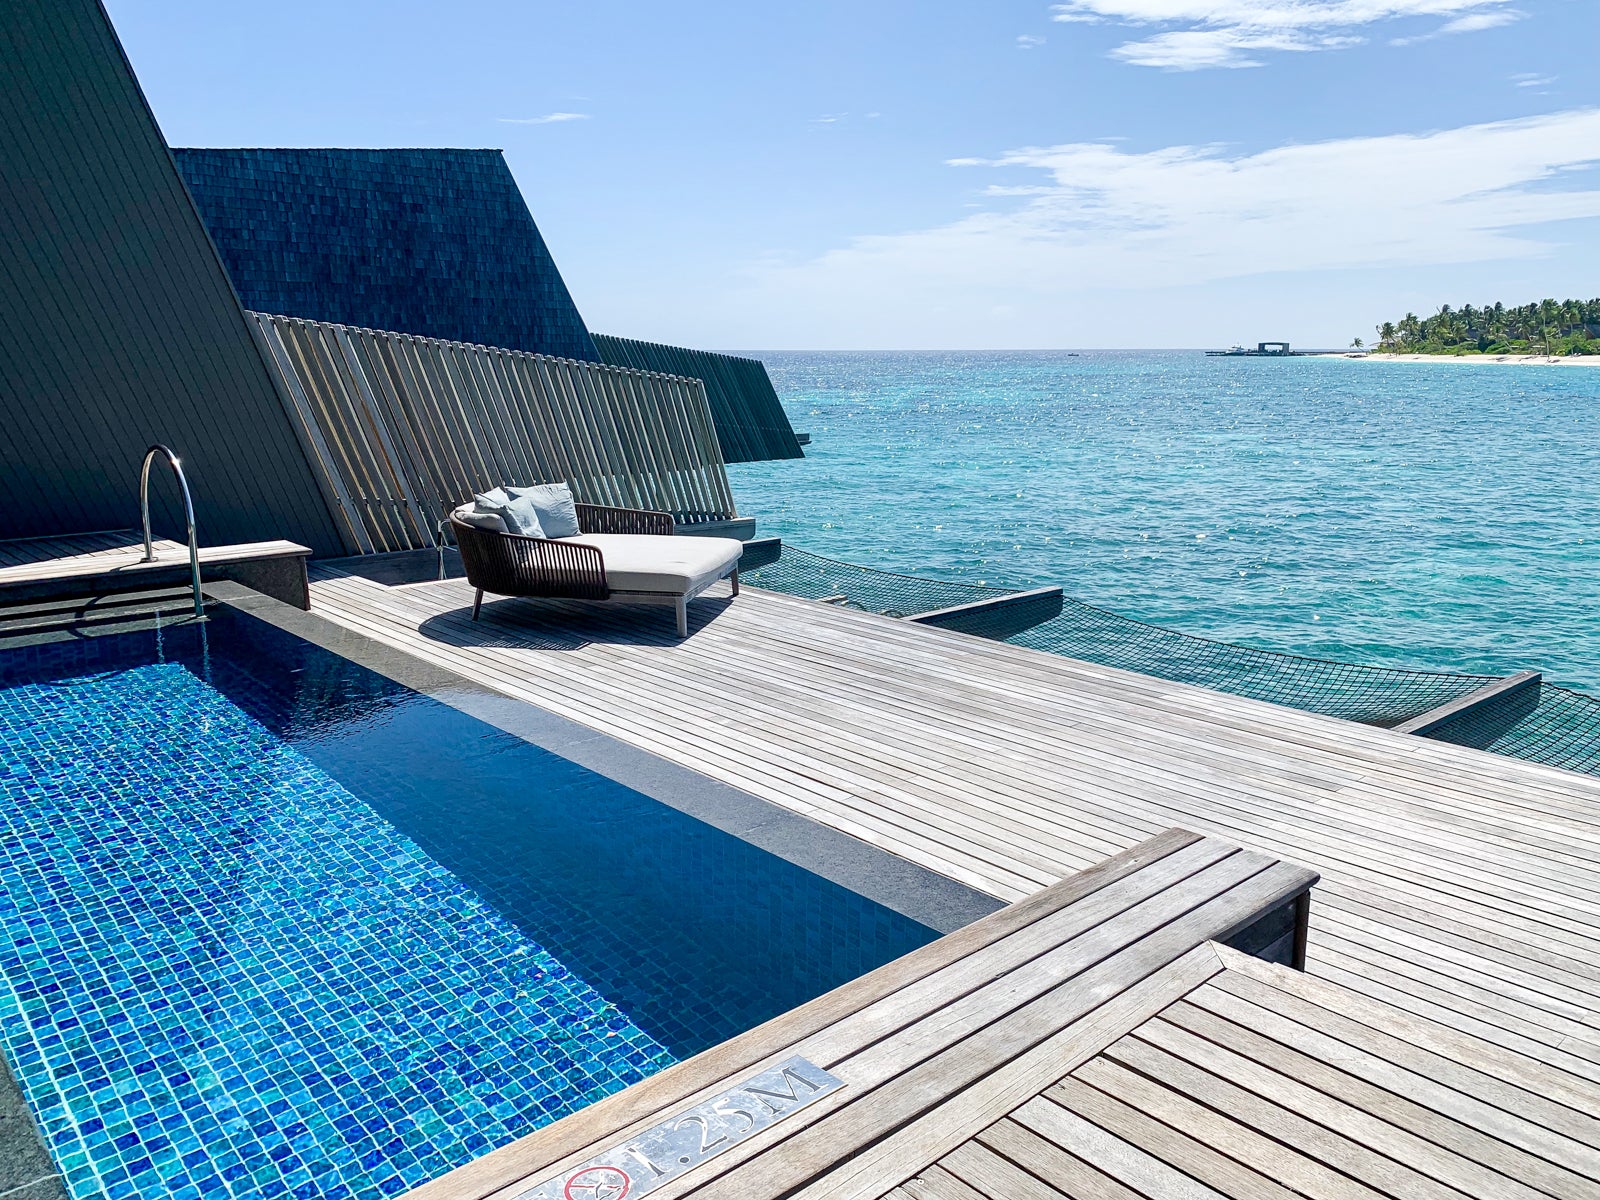 St. Regis Maldives overwater villa